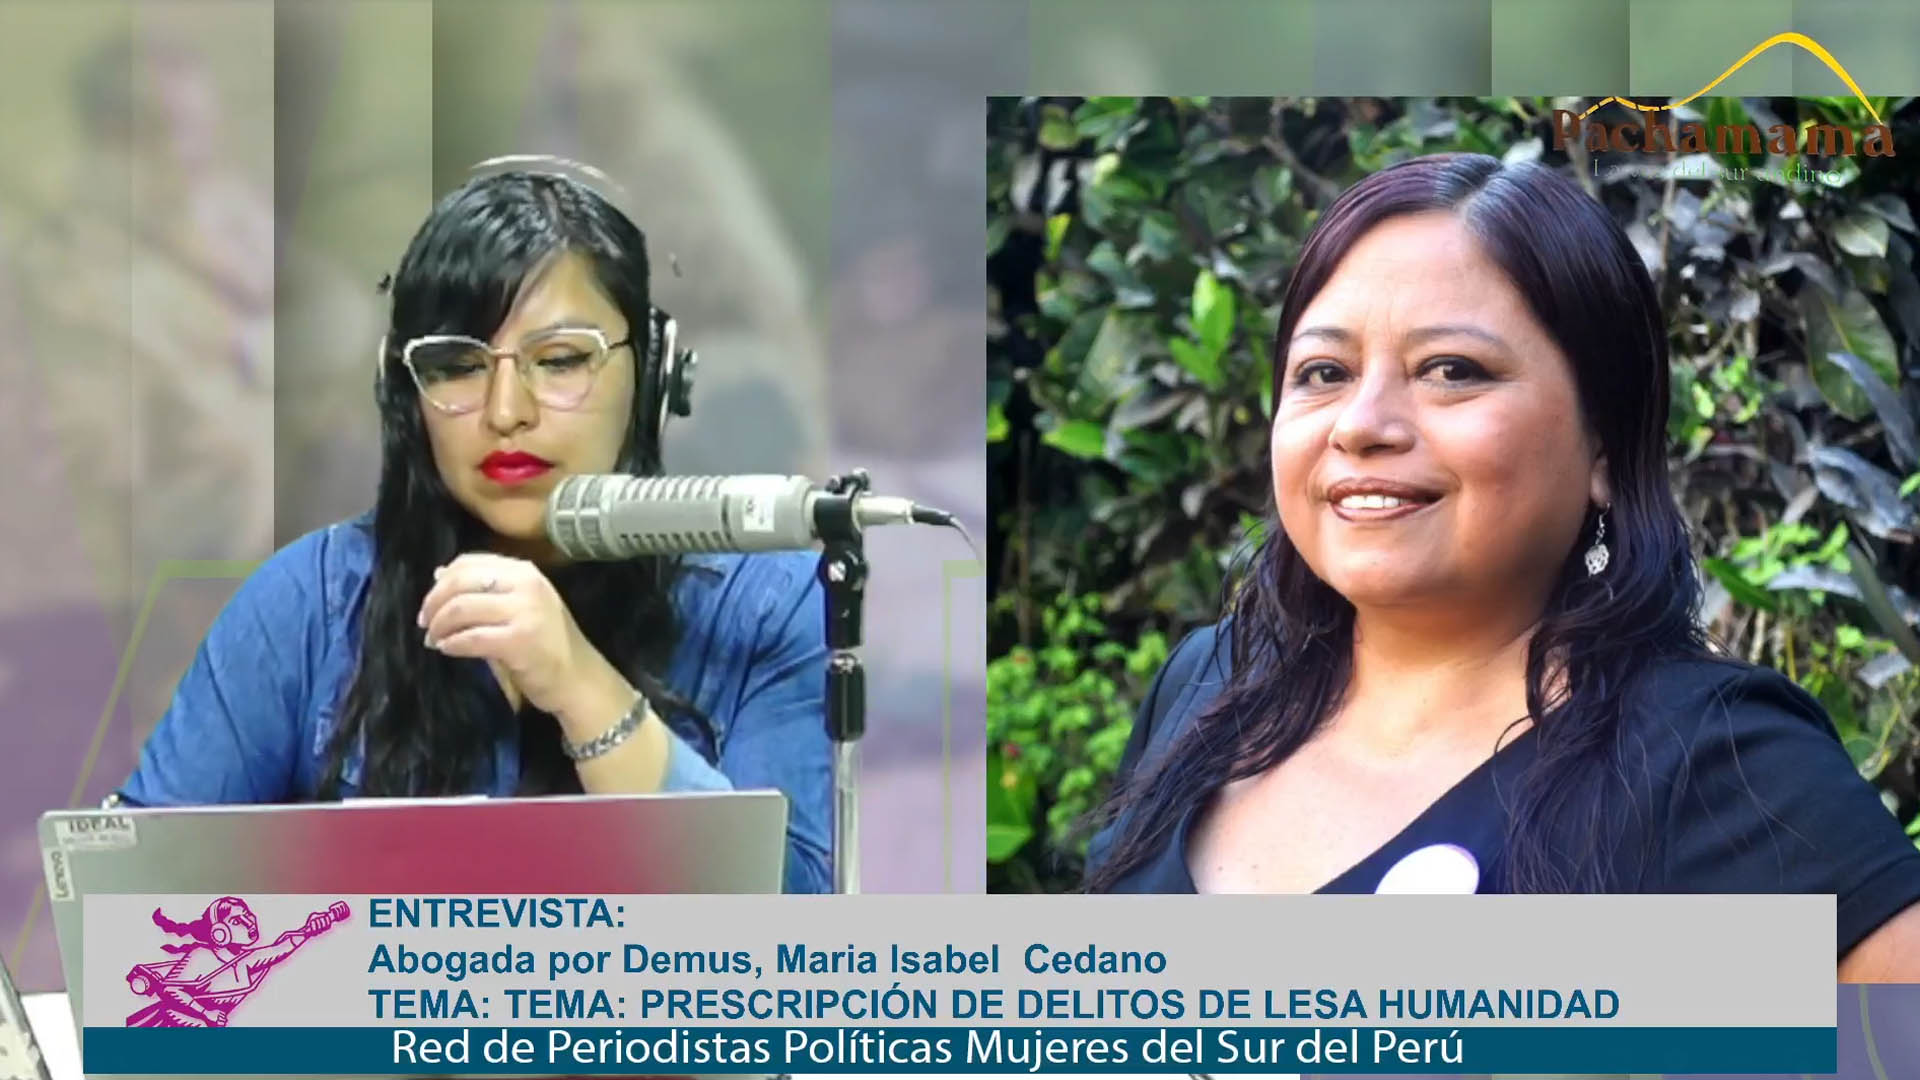 María Isabel Sedano: Esterilizaciones forzadas y violaciones en Manta en riesgo de impunidad